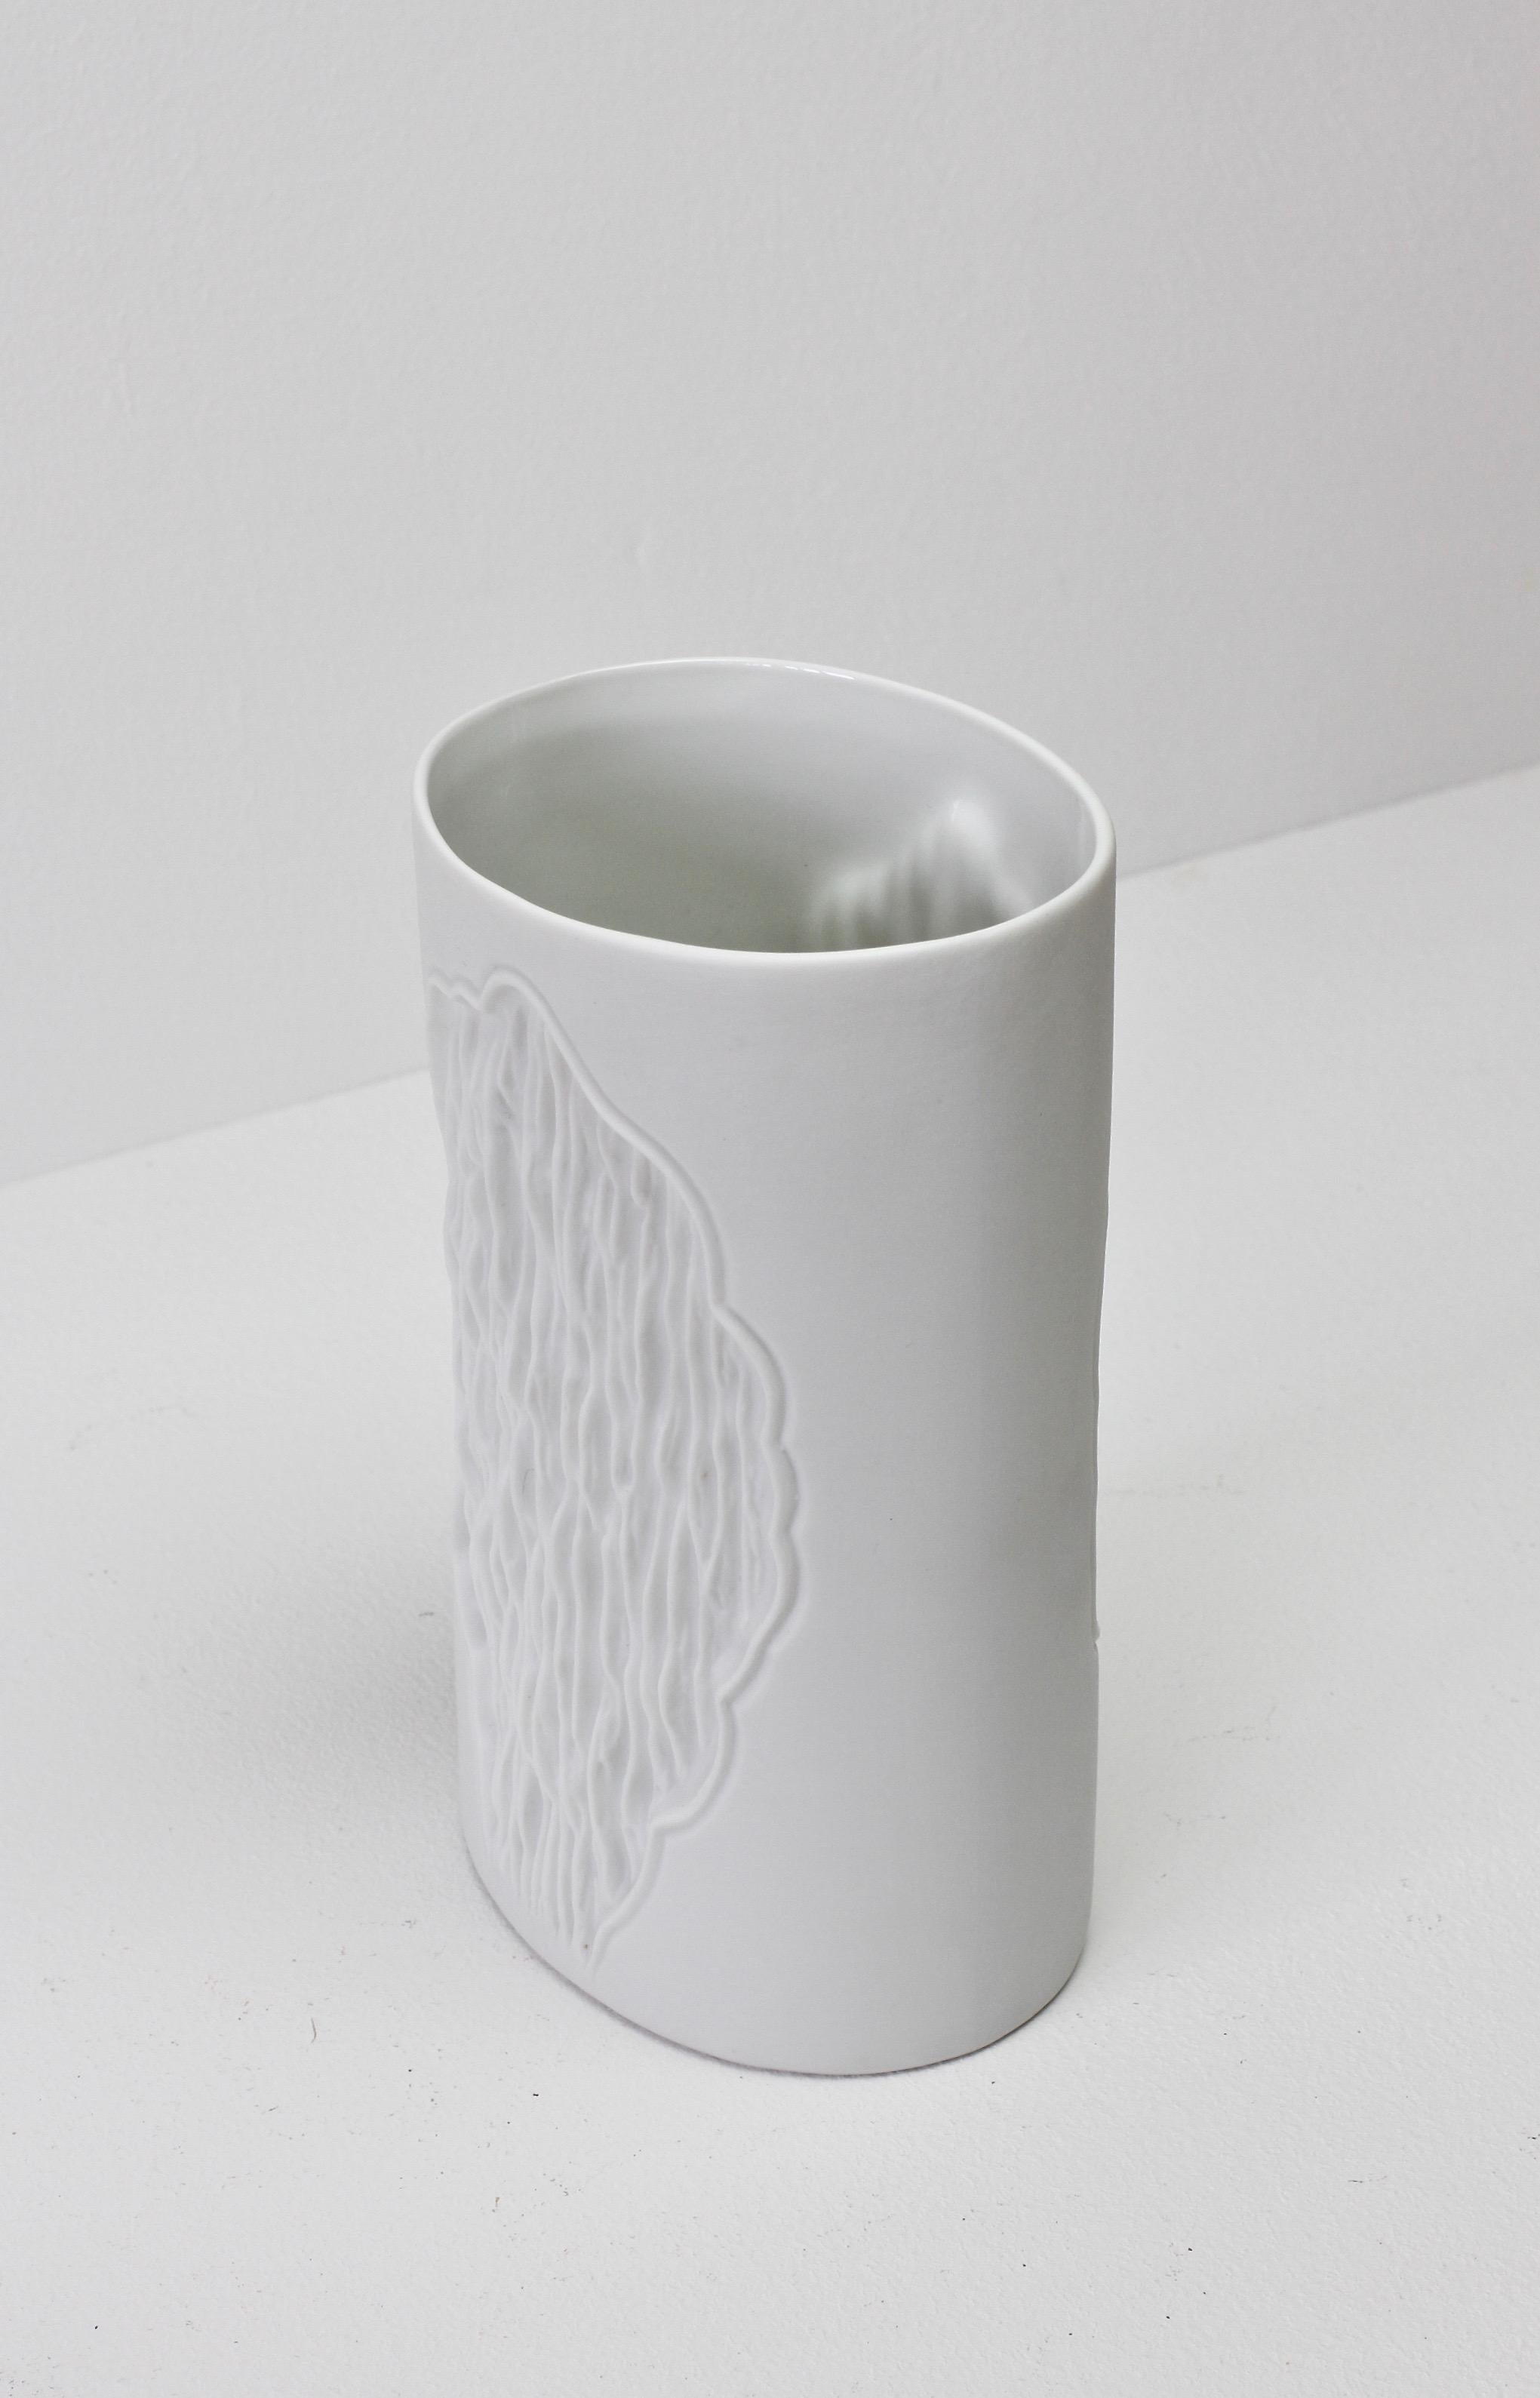 Weiße Vintage-Vase aus Biskuit mit einem Reliefmuster mit organischer Struktur, entworfen von Manfred Frey für AK Kaiser Porzellan, ca. 1980er Jahre.

Modell/Formnummer 0648.